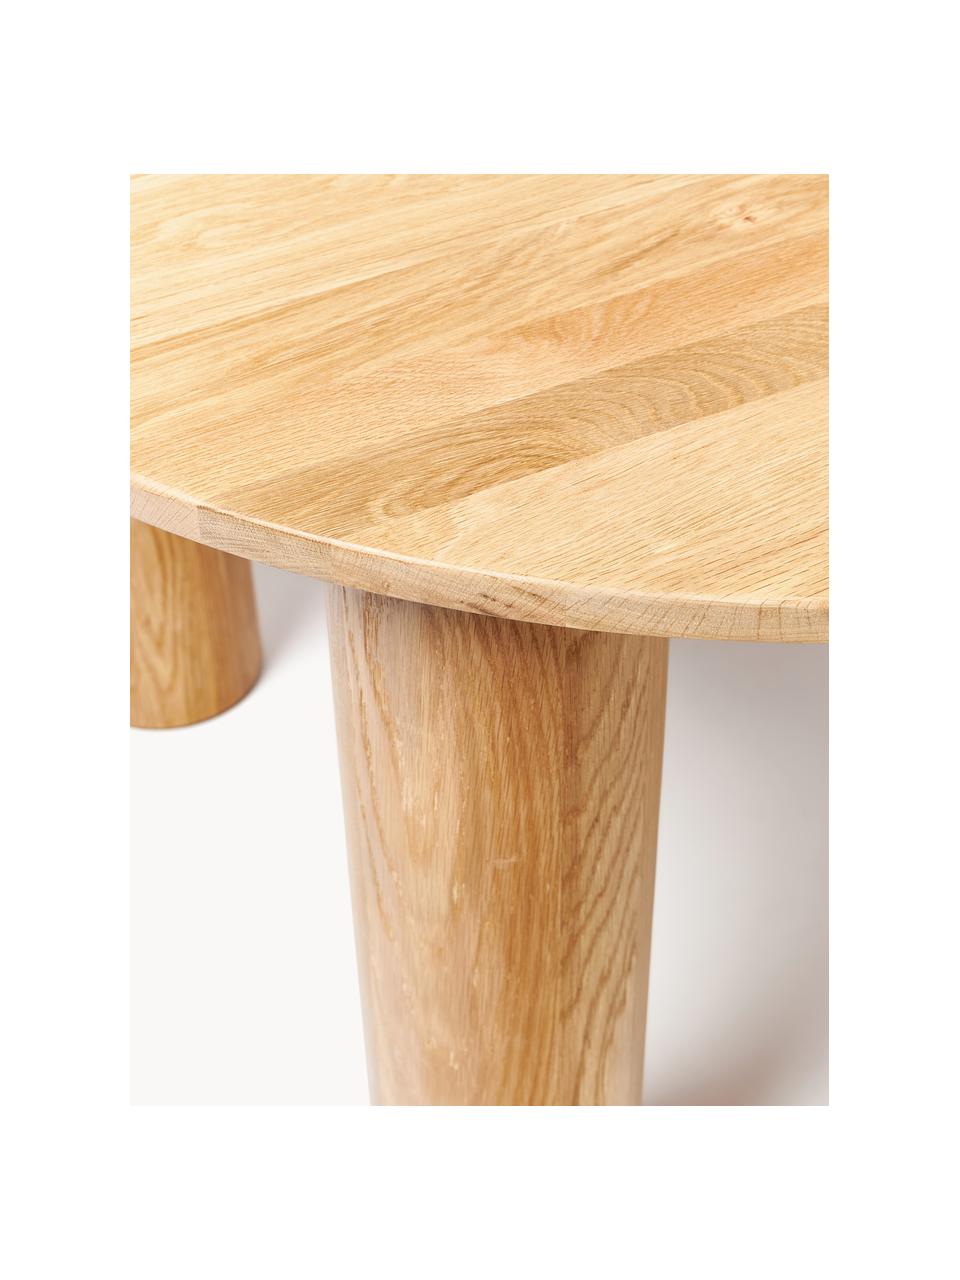 Runder Esstisch Ohana aus Eichenholz, Ø 120 cm, Eichenholz, geölt

Dieses Produkt wird aus nachhaltig gewonnenem, FSC®-zertifiziertem Holz gefertigt., Helles Eichenholz, Ø 120 cm